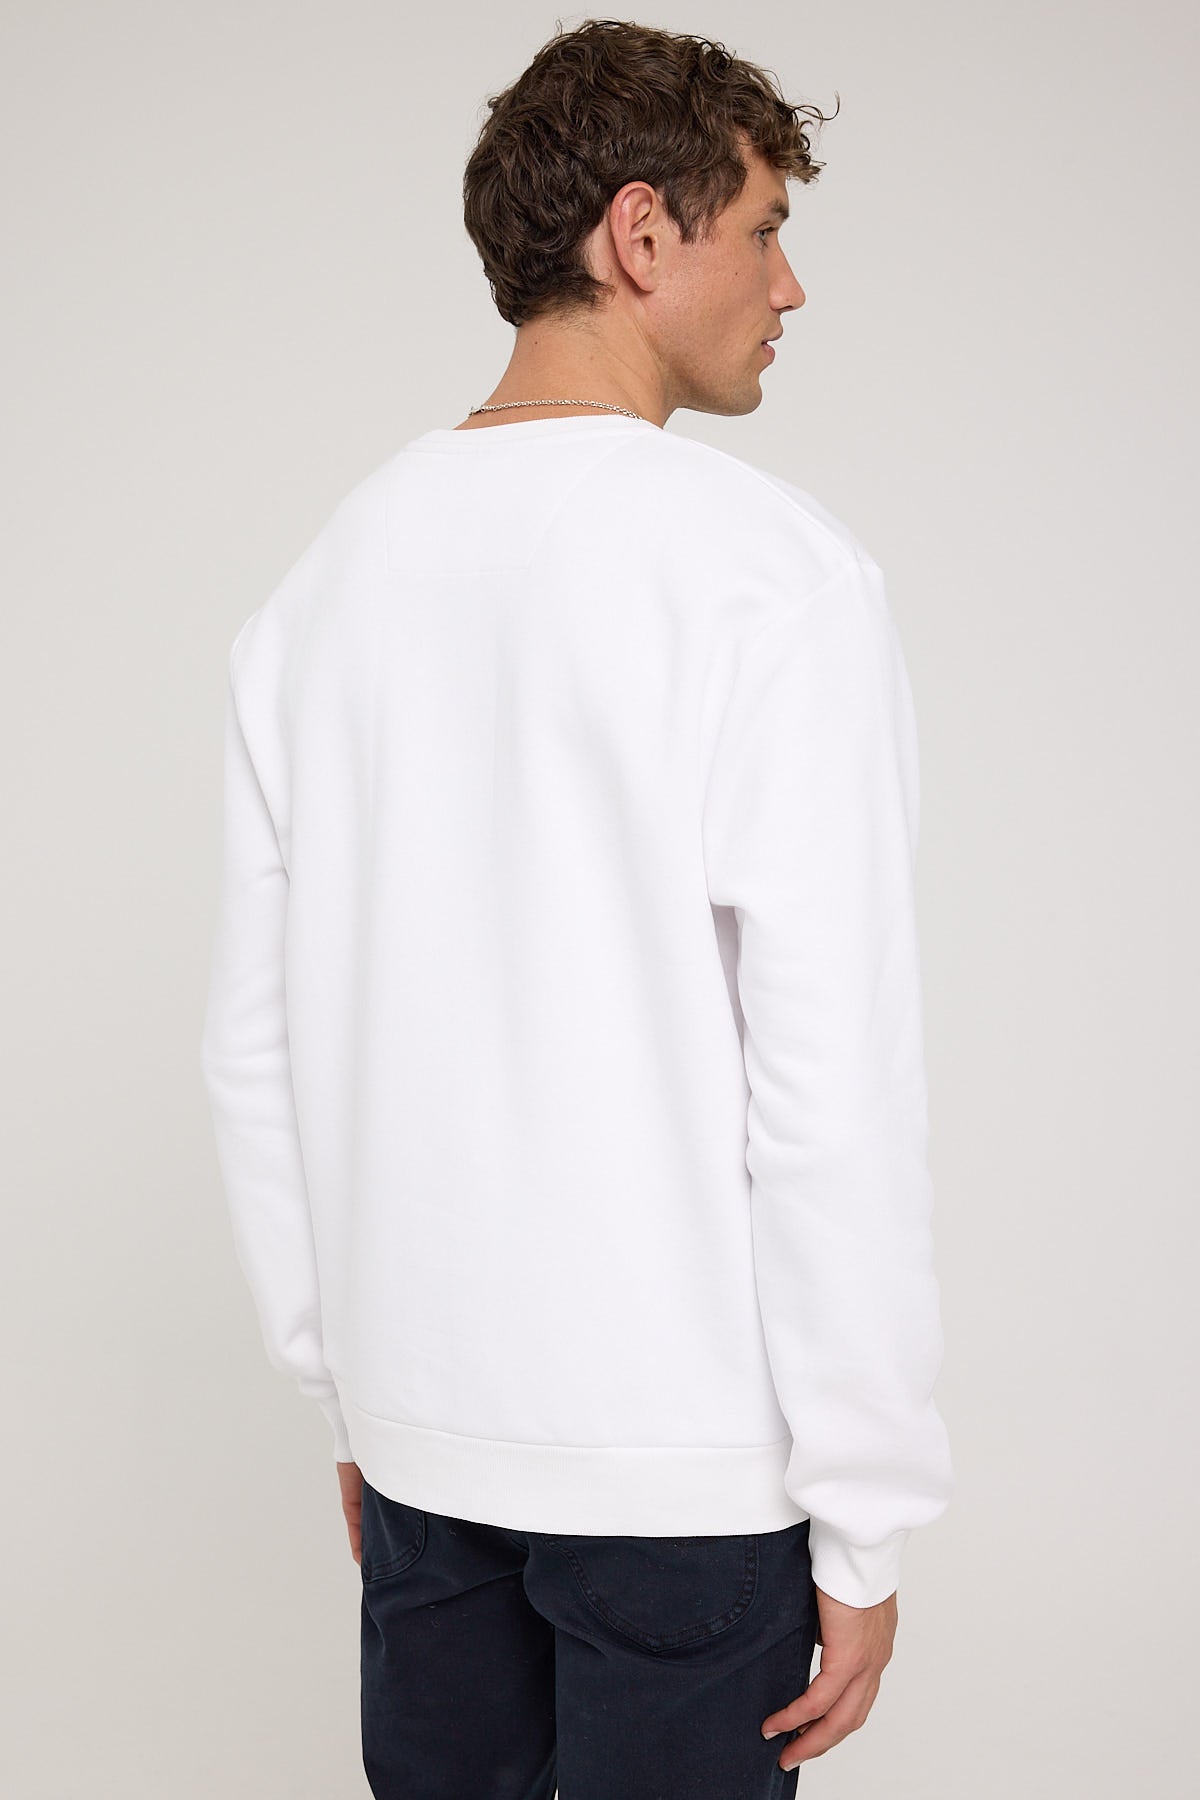 Nautica Heyer Sweatshirt White